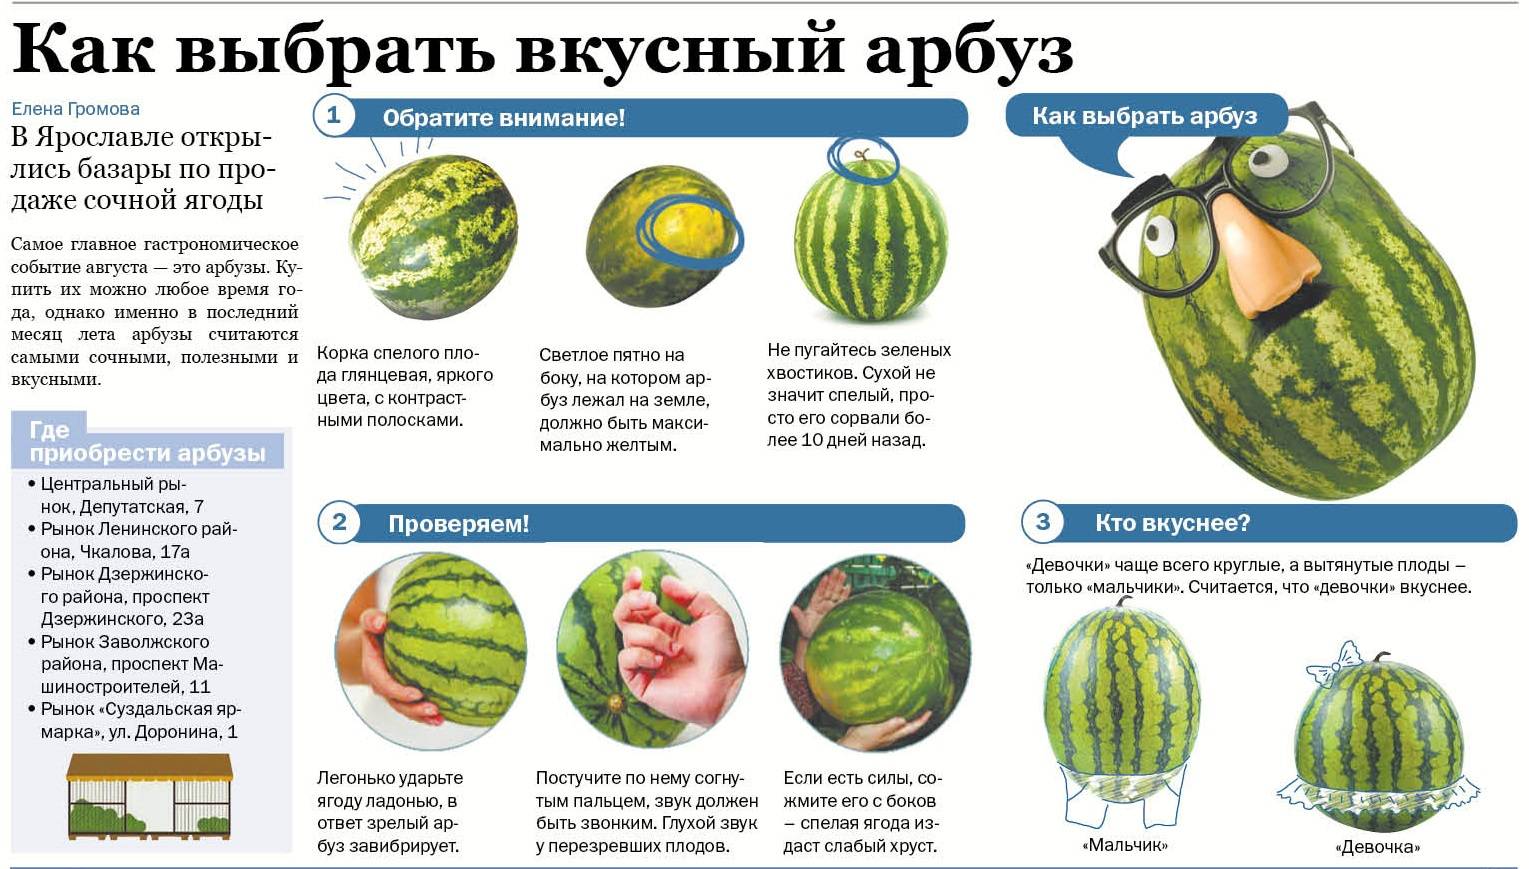 Как выбрать арбуз: 8 способов и правил выбора вкусного спелого арбуза, видео